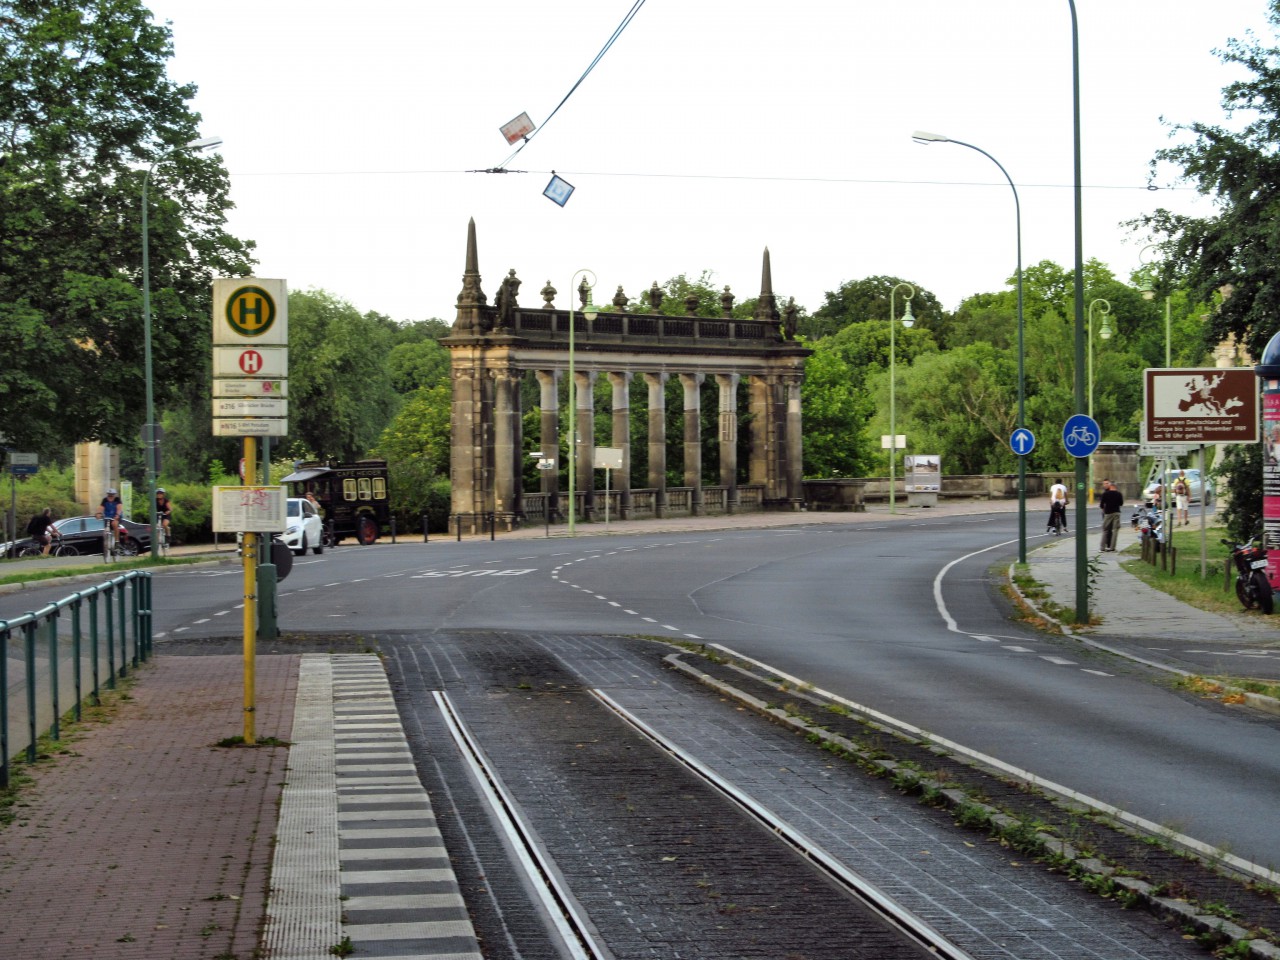 Vedle kamennch sloup stvaly zvory/hran. pechod z NDR do Zp. Berlna (viz i cedule vpravo)